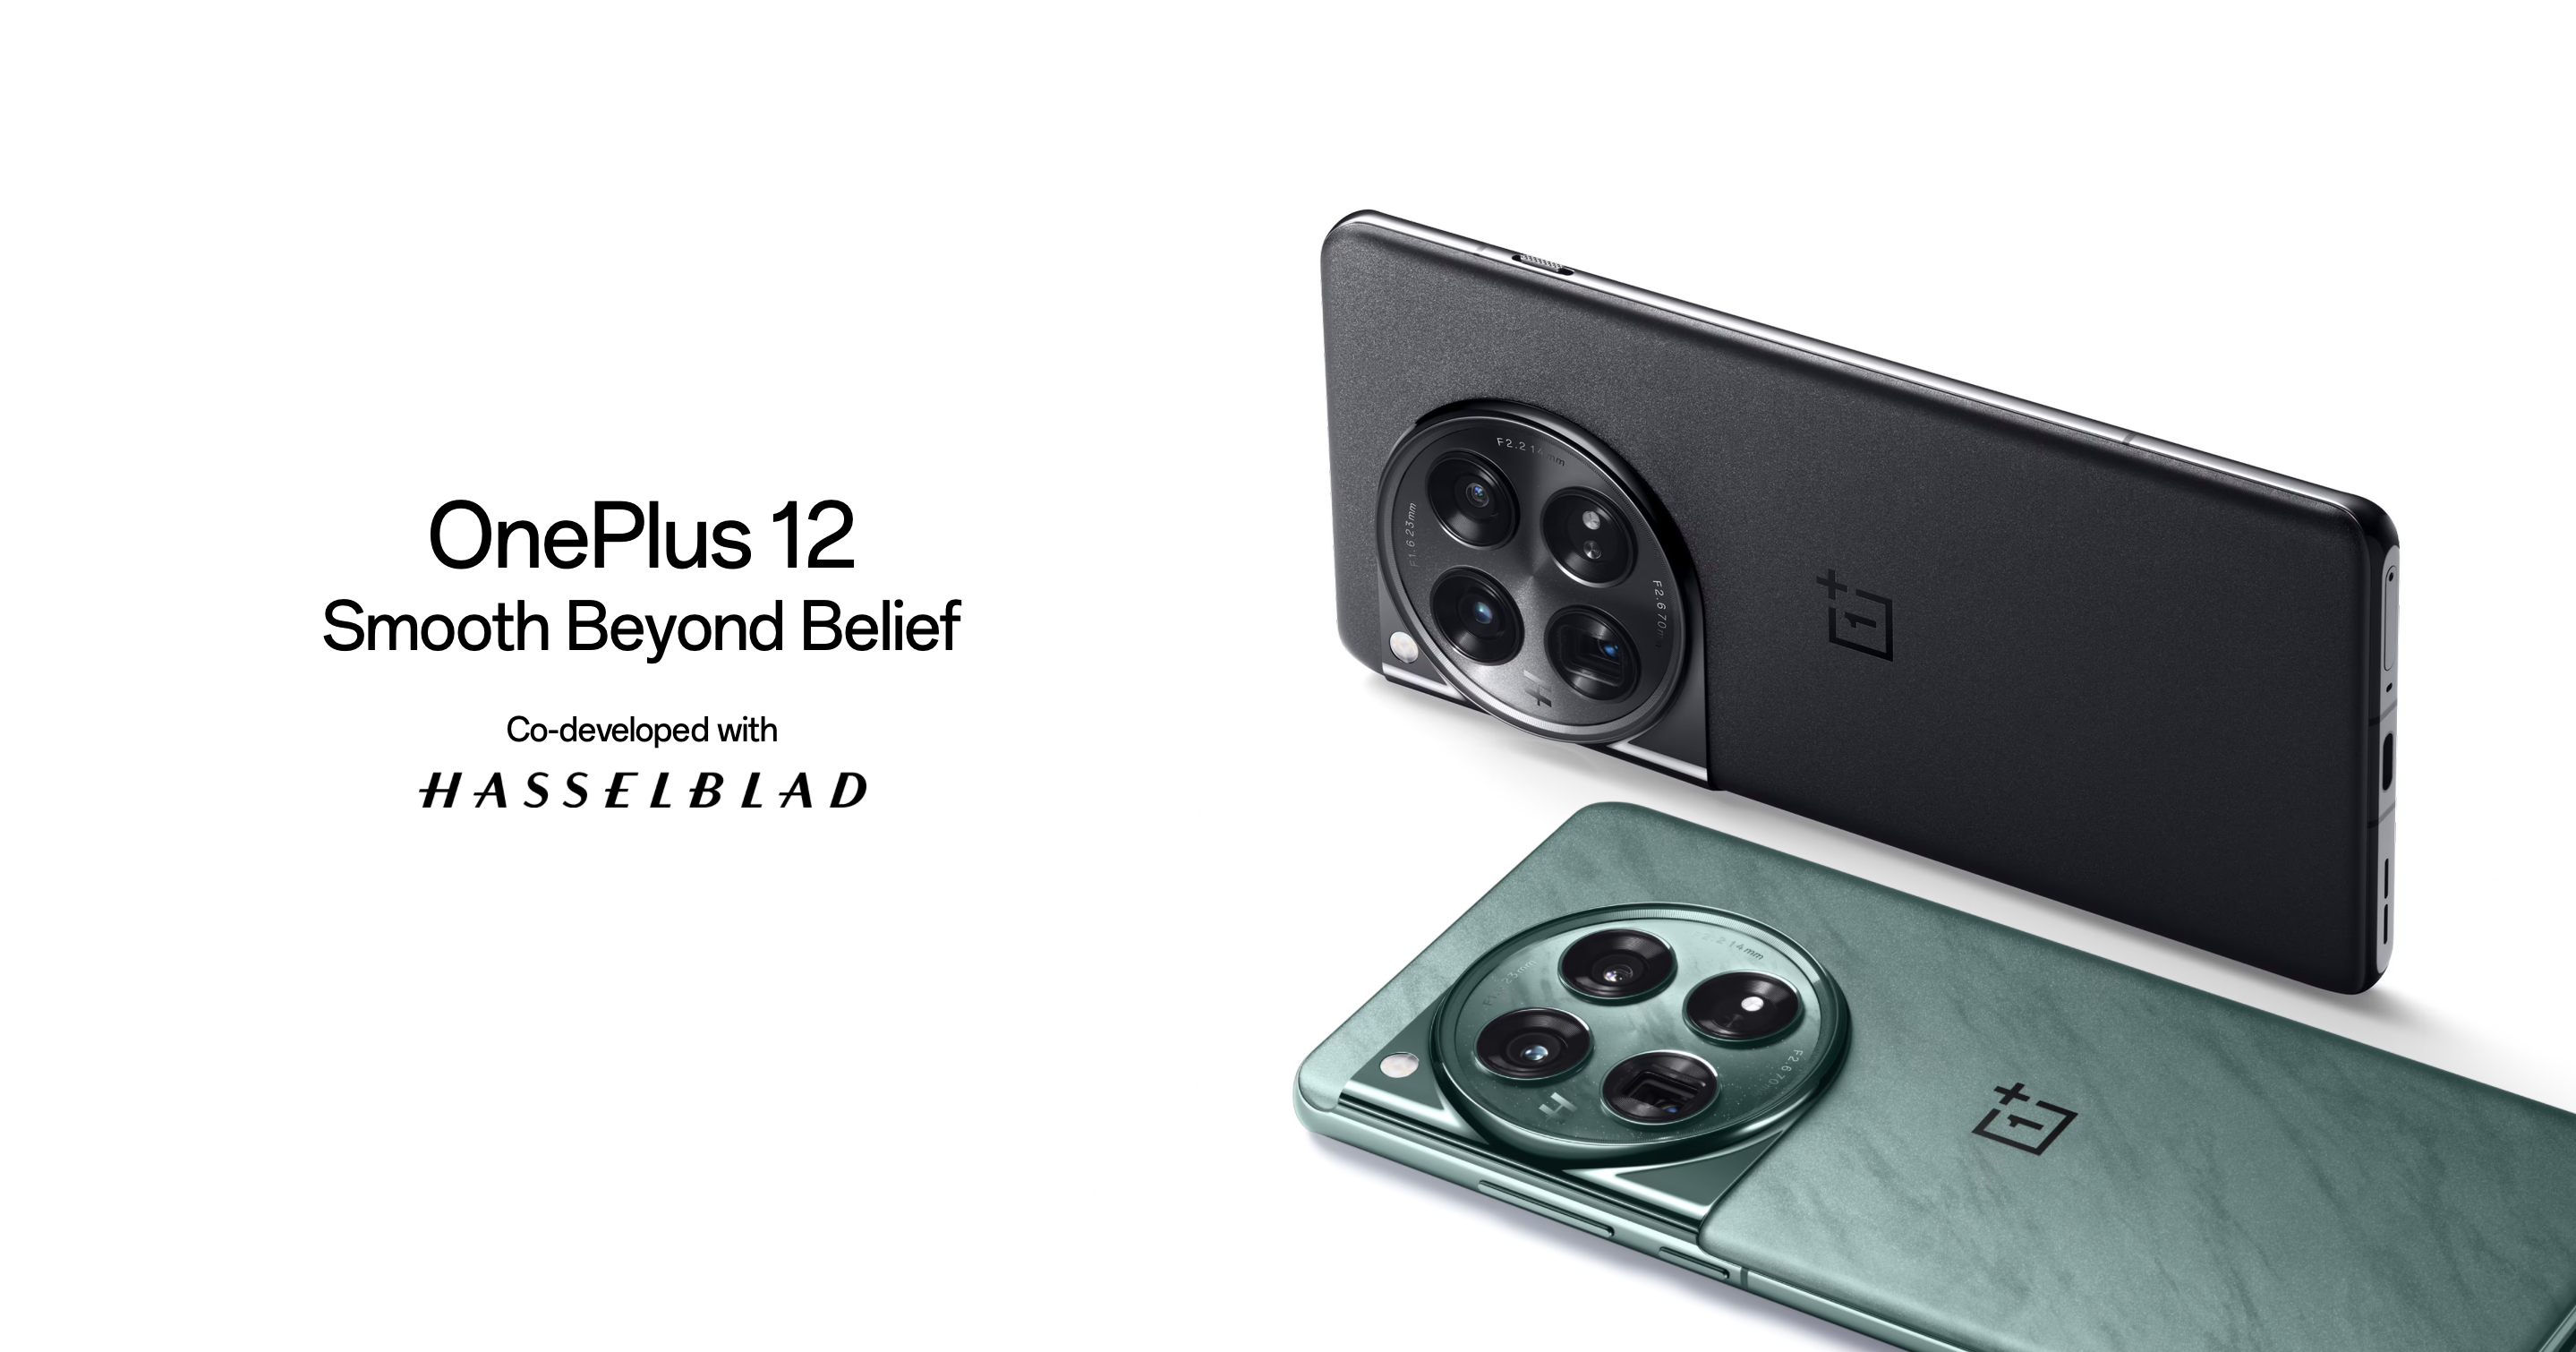 Le OnePlus 12, doté d'un appareil photo Hasselblad, d'une puce Snapdragon 8 Gen 3, d'une batterie de 5 400 mAh et d'une protection IP65, a fait ses débuts sur le marché mondial.